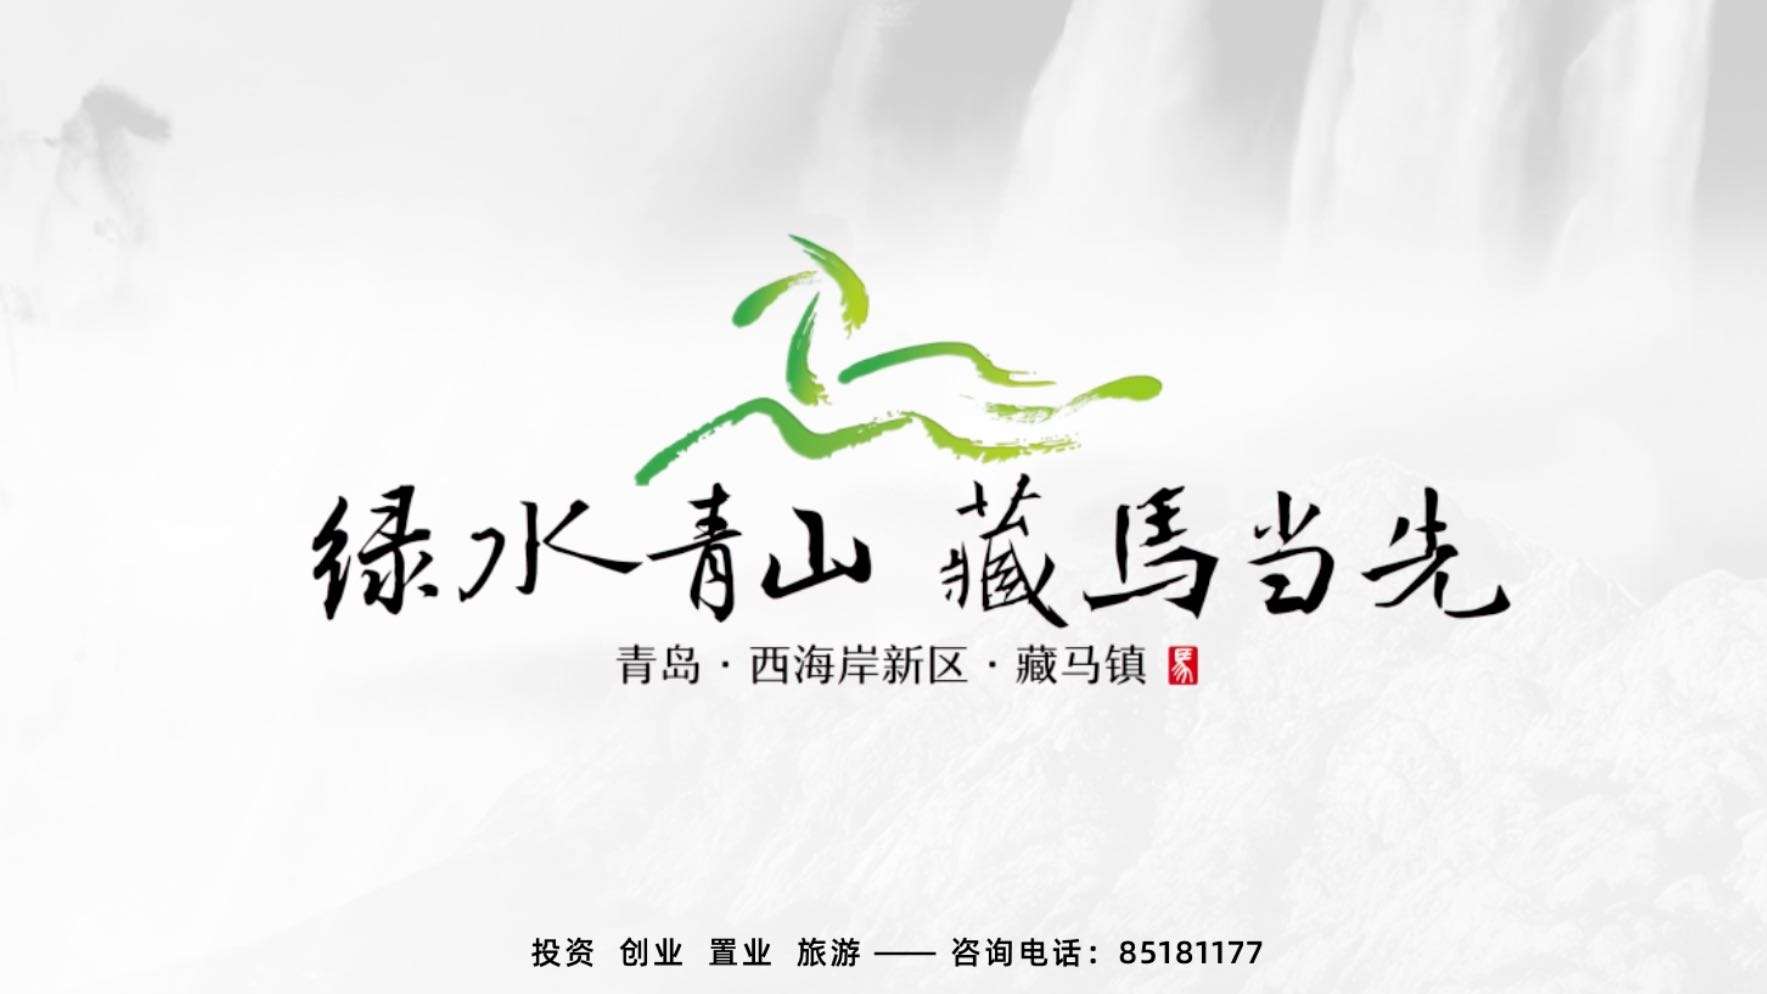 《绿水青山 藏马当先》2020藏马镇官方宣传片